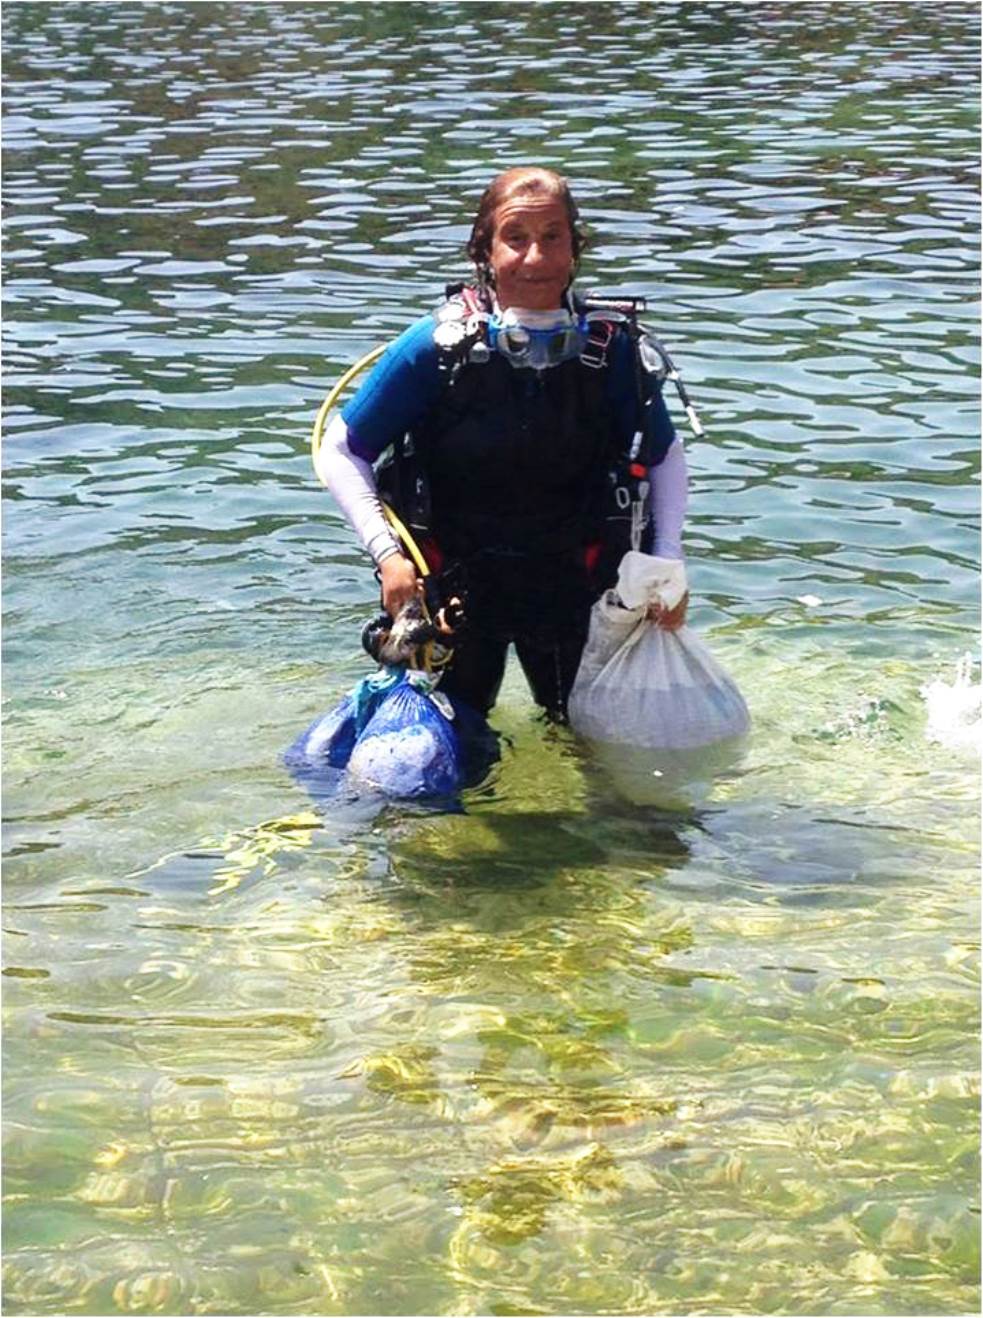 Femme debout dans l'eau, brandissant des sacs en plastique.